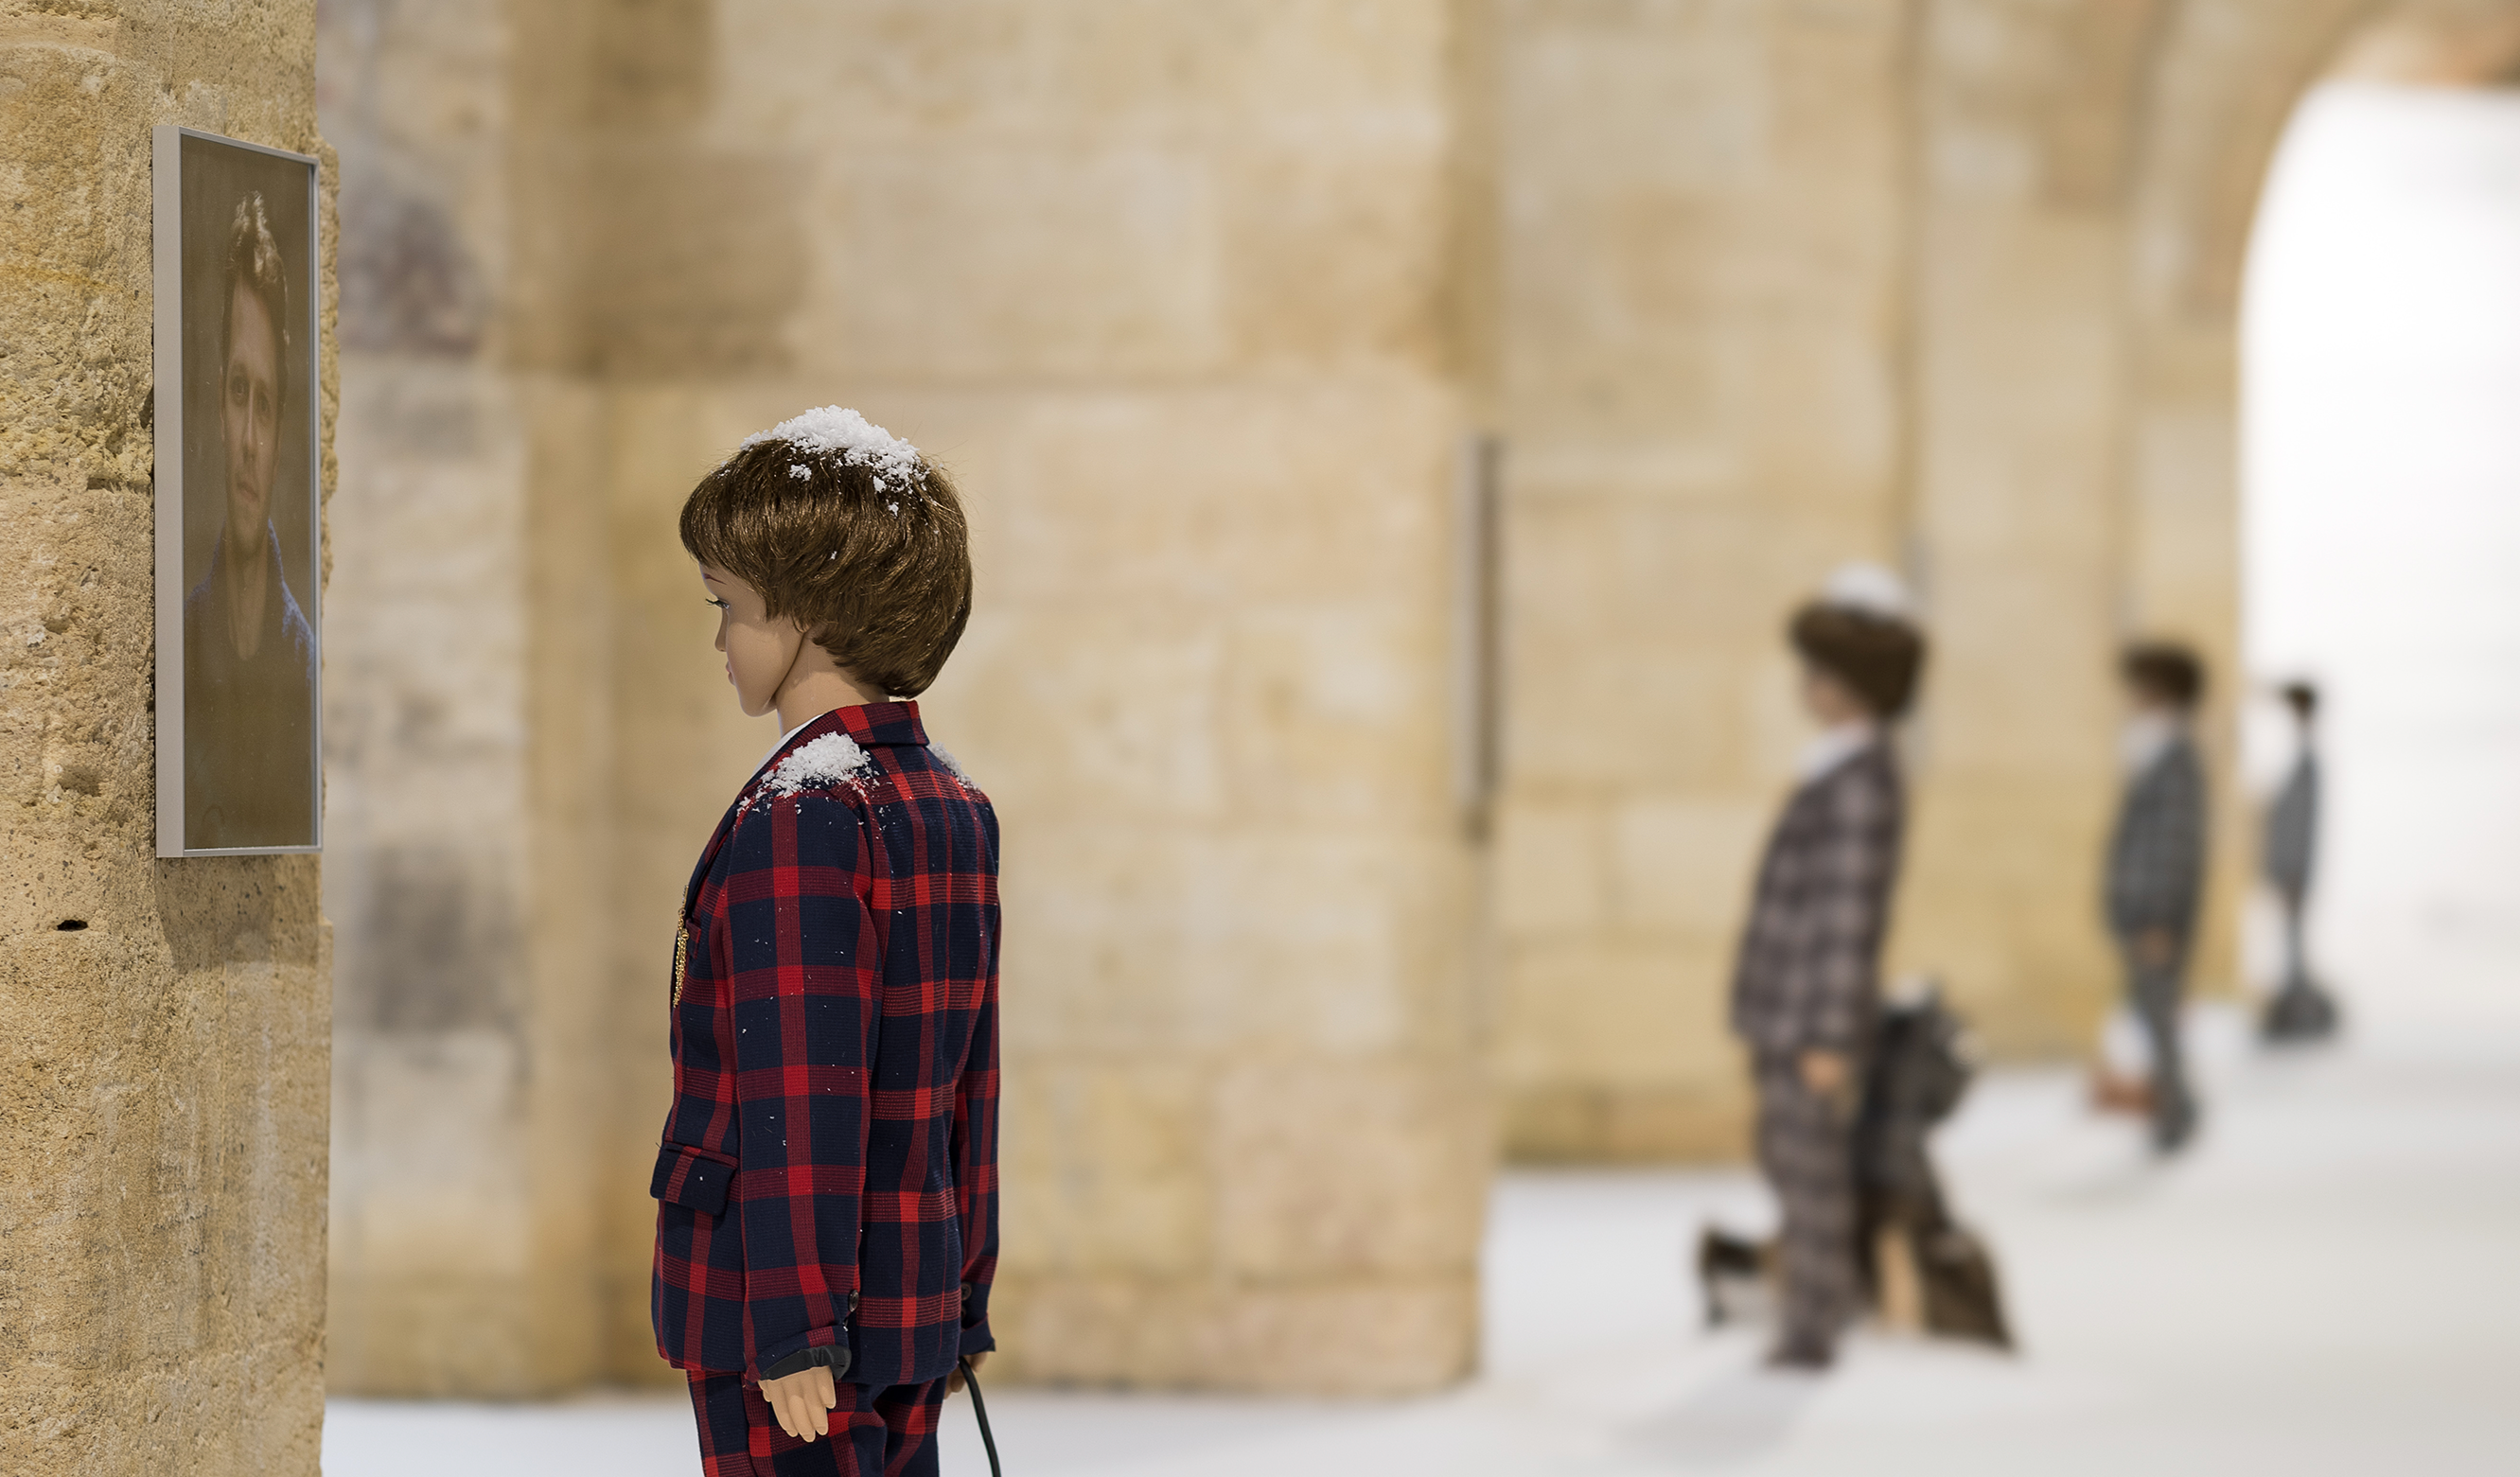 Vue de l'exposition "Auto" de Nina Beier, Capc musée d'art contemporain. Plusieurs mannequins d'enfants en costumes luxueux regardent des portraits accrochés au mur.